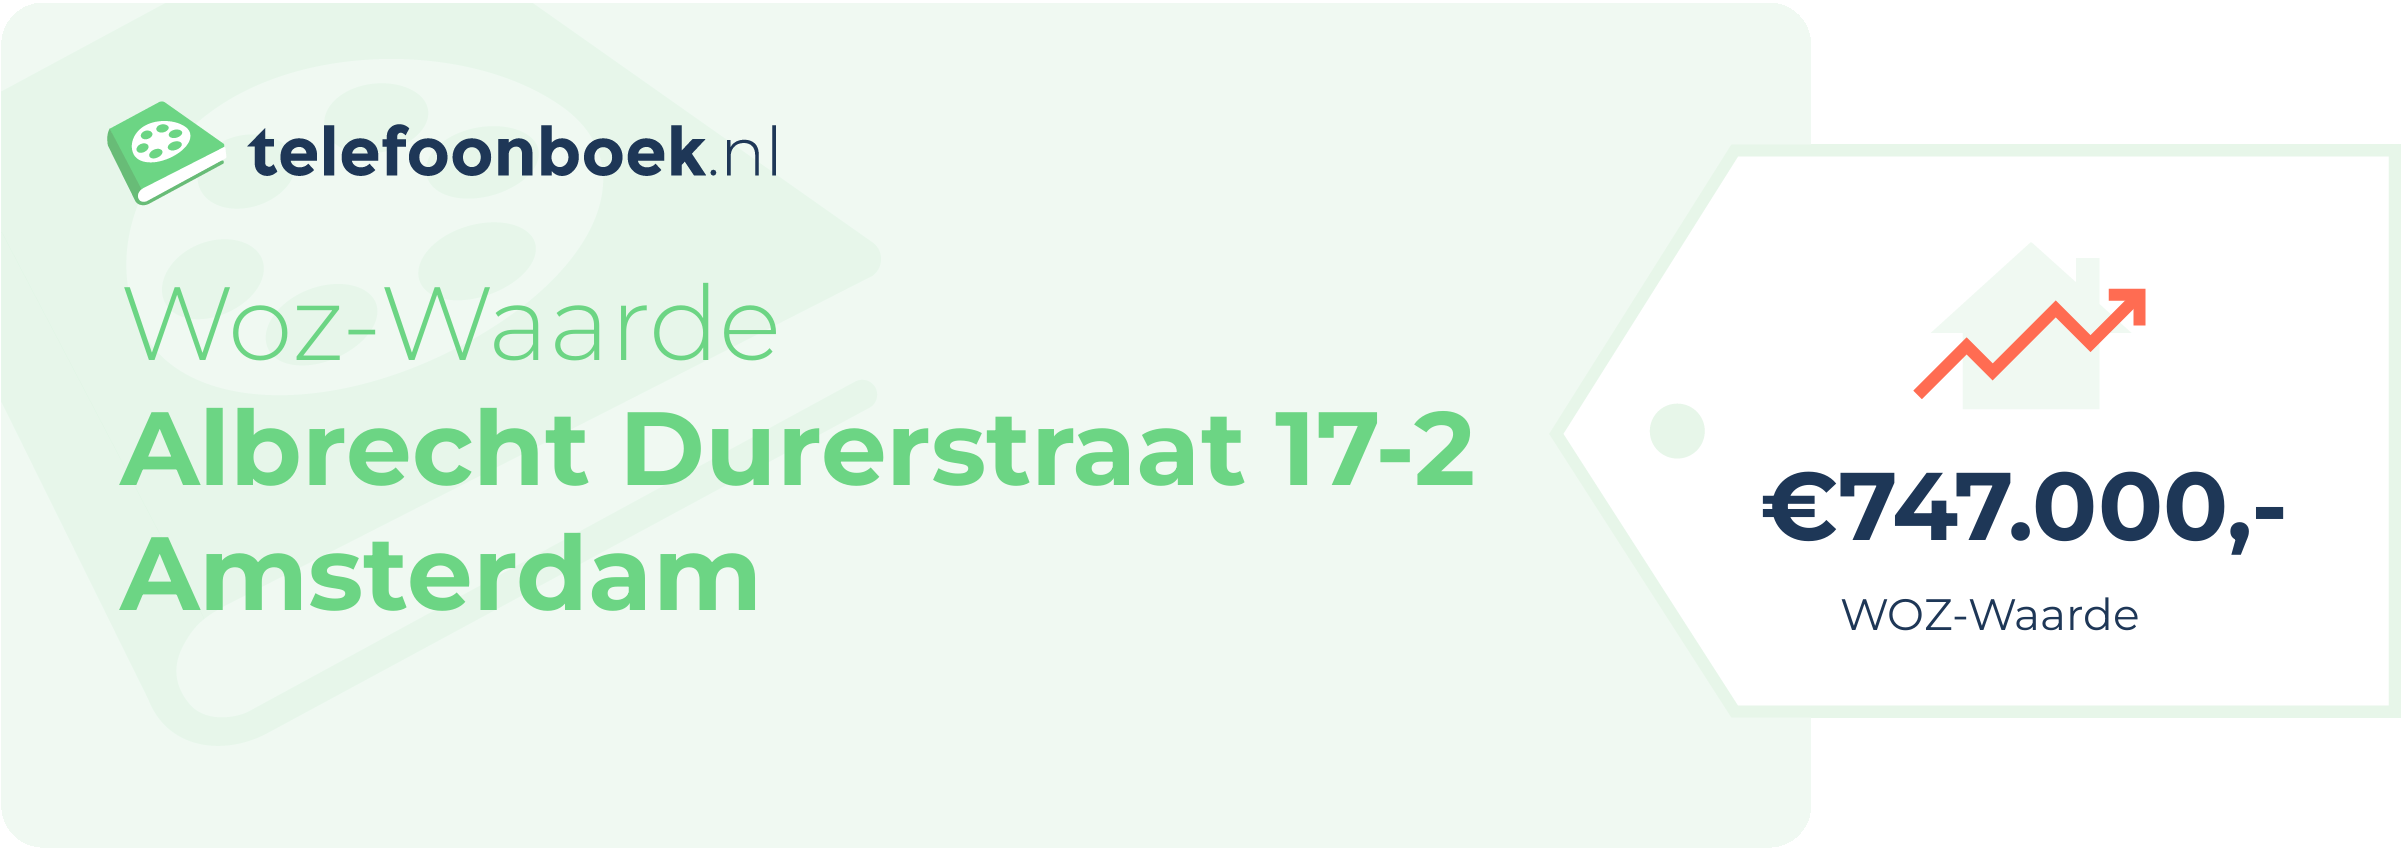 WOZ-waarde Albrecht Durerstraat 17-2 Amsterdam